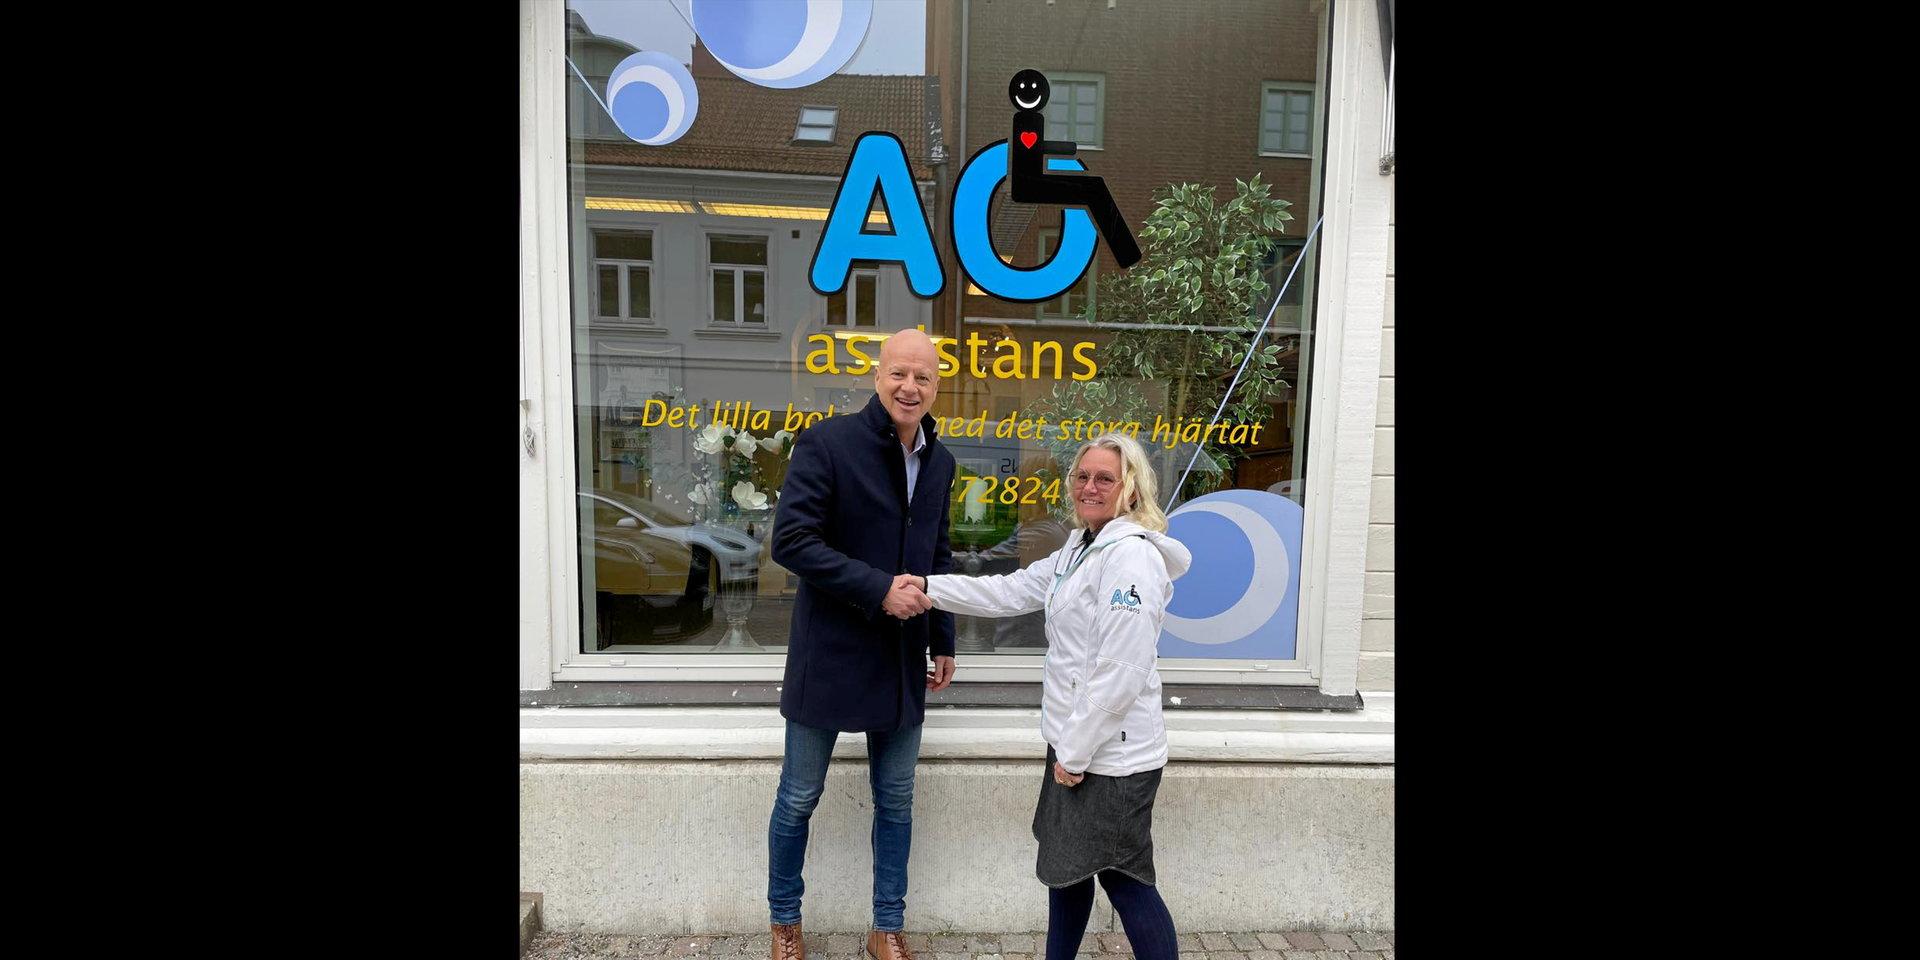 Centralens VD Niklas Blom tog kontakt med Anette Olausson ägare av AO assistans och ville gärna sponsra deras disco.